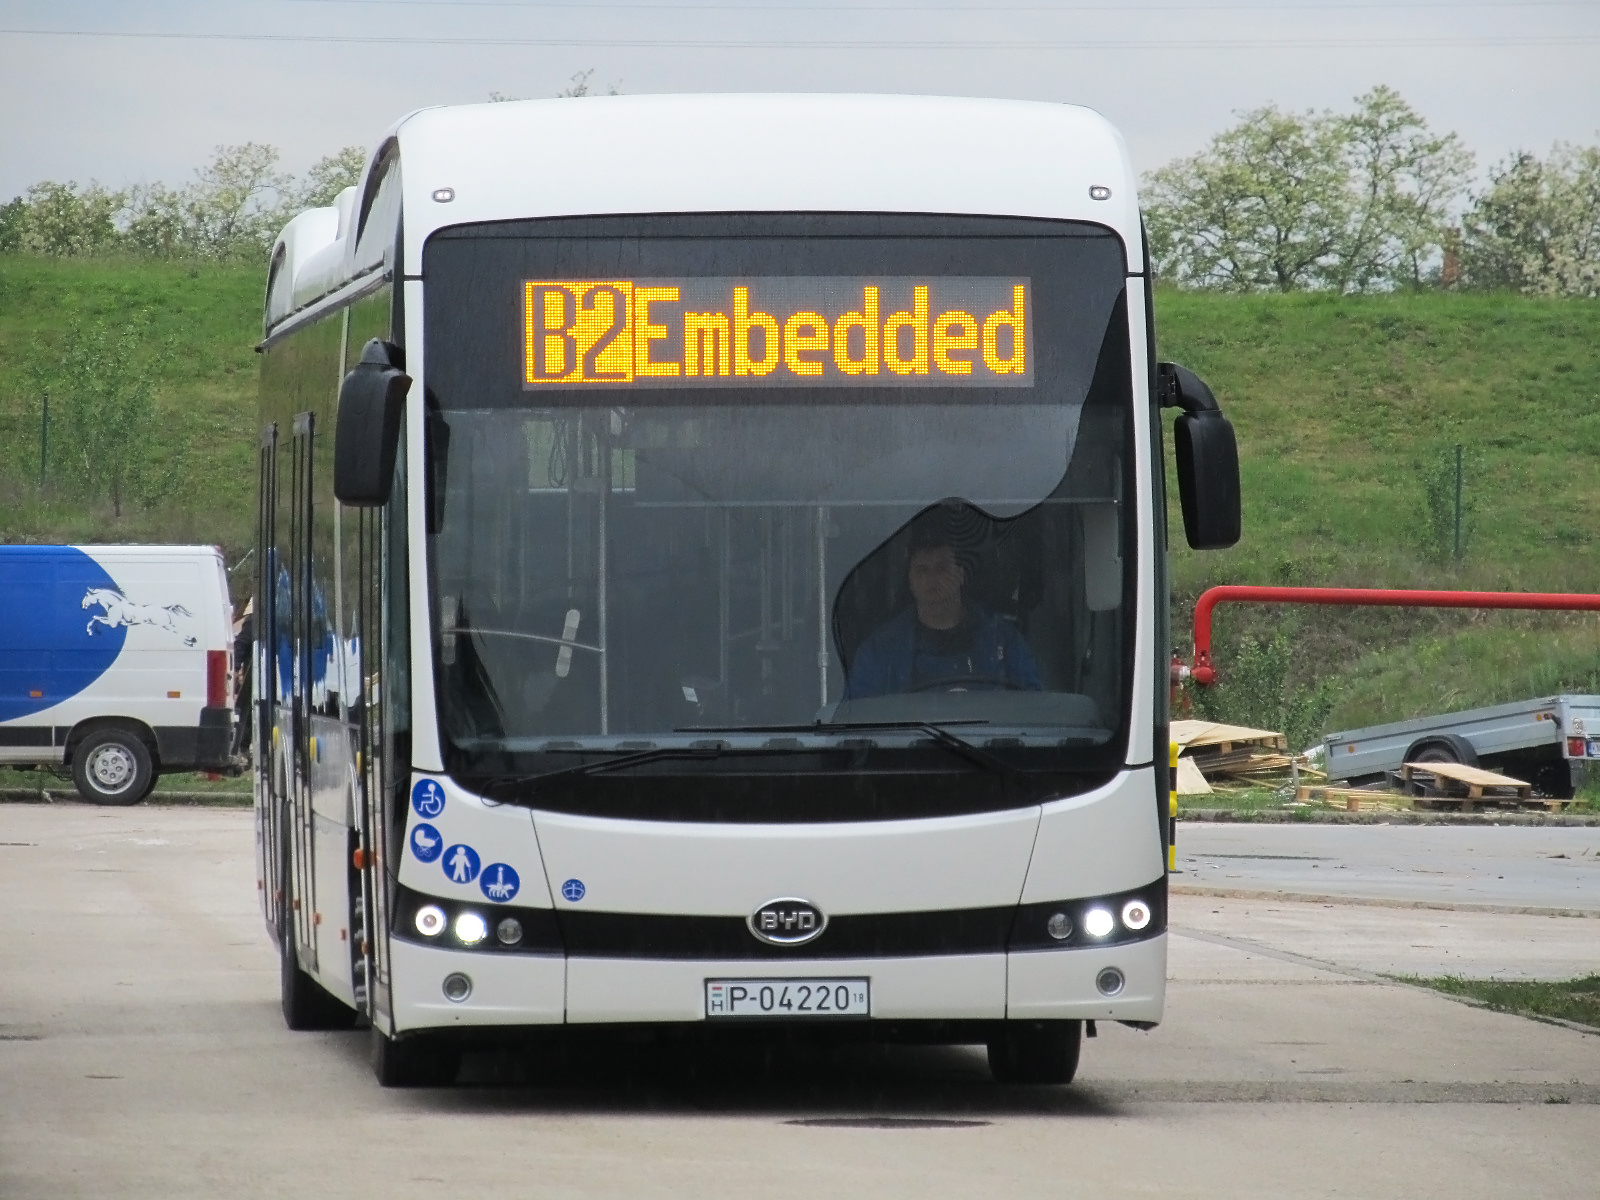 A BYD szállíthatja Miskolc 10 darabos villanybusz-flottáját